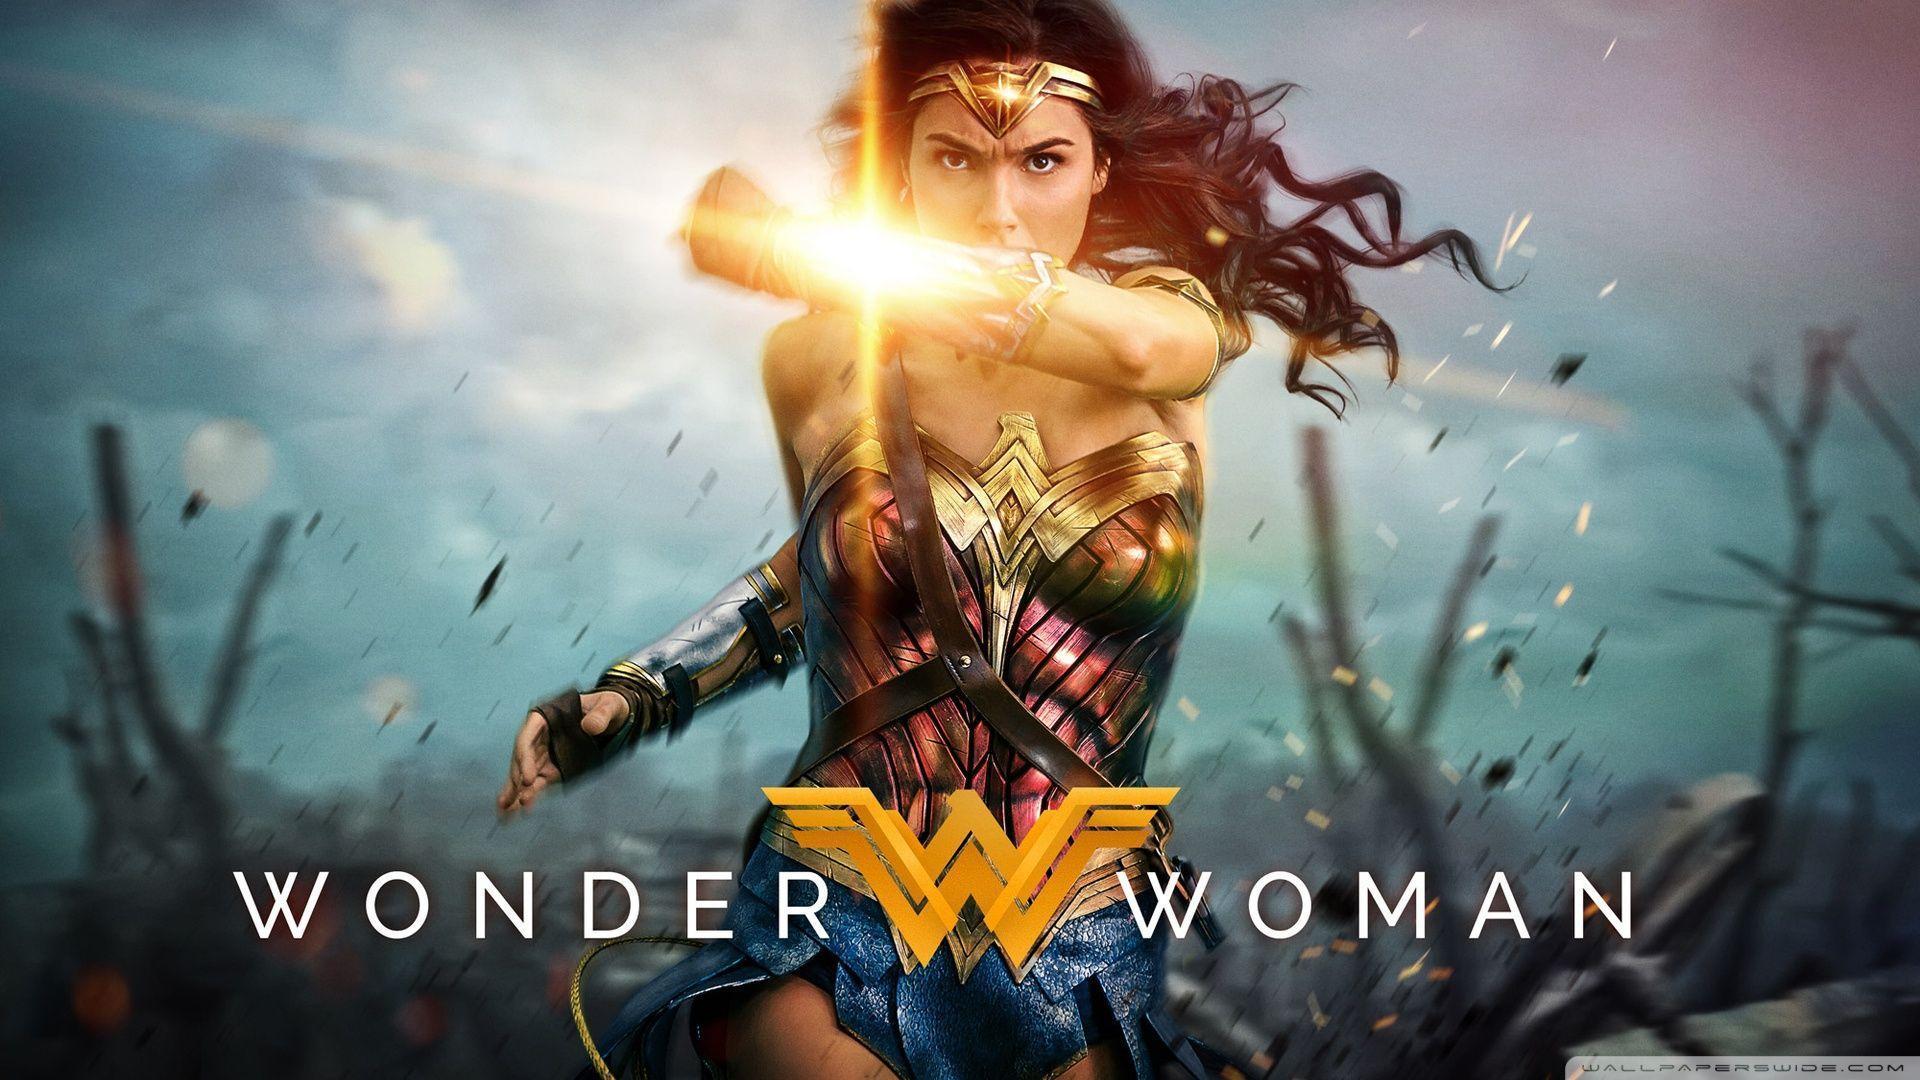 Wonder Woman Wallpaper Hd For Fan - Wonder Woman 2017 Hd , HD Wallpaper & Backgrounds